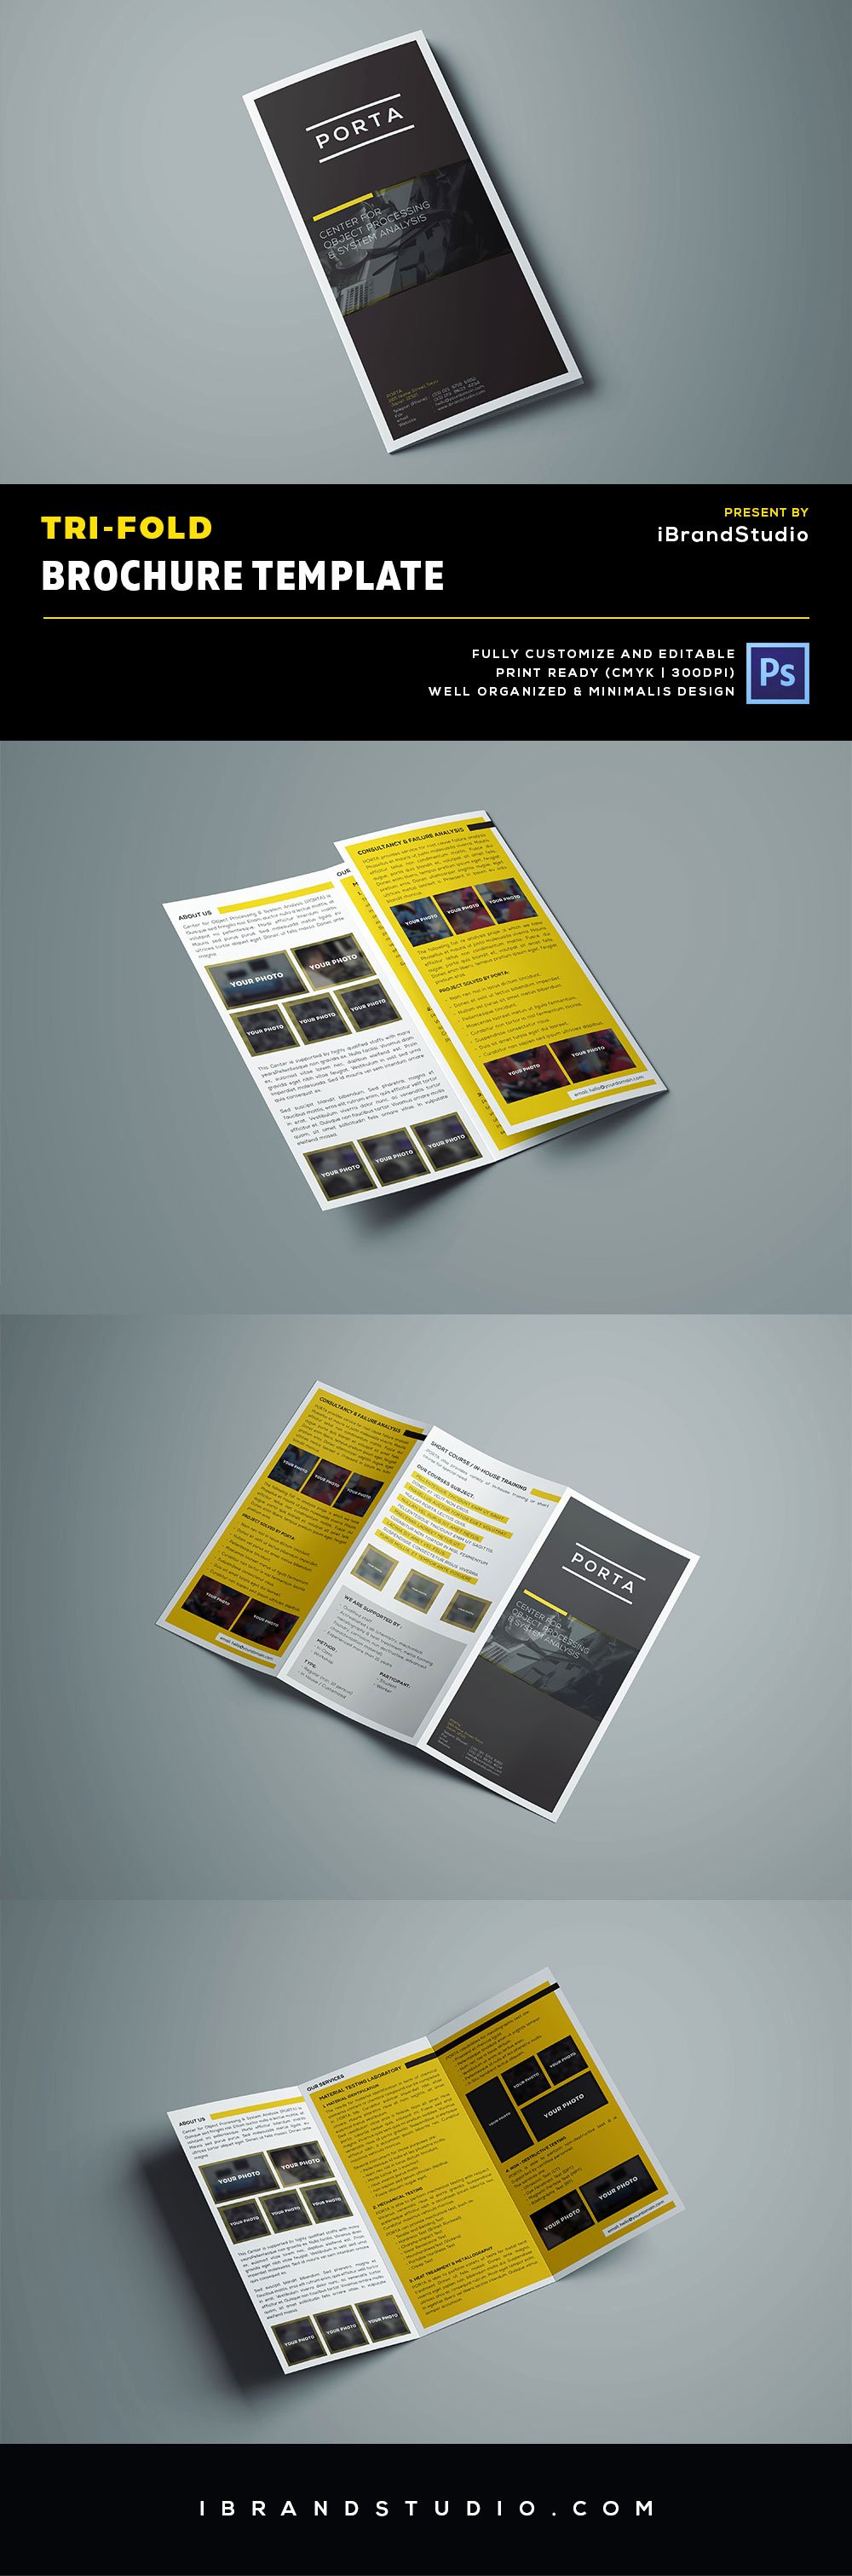 tri fold brochure template psd respond